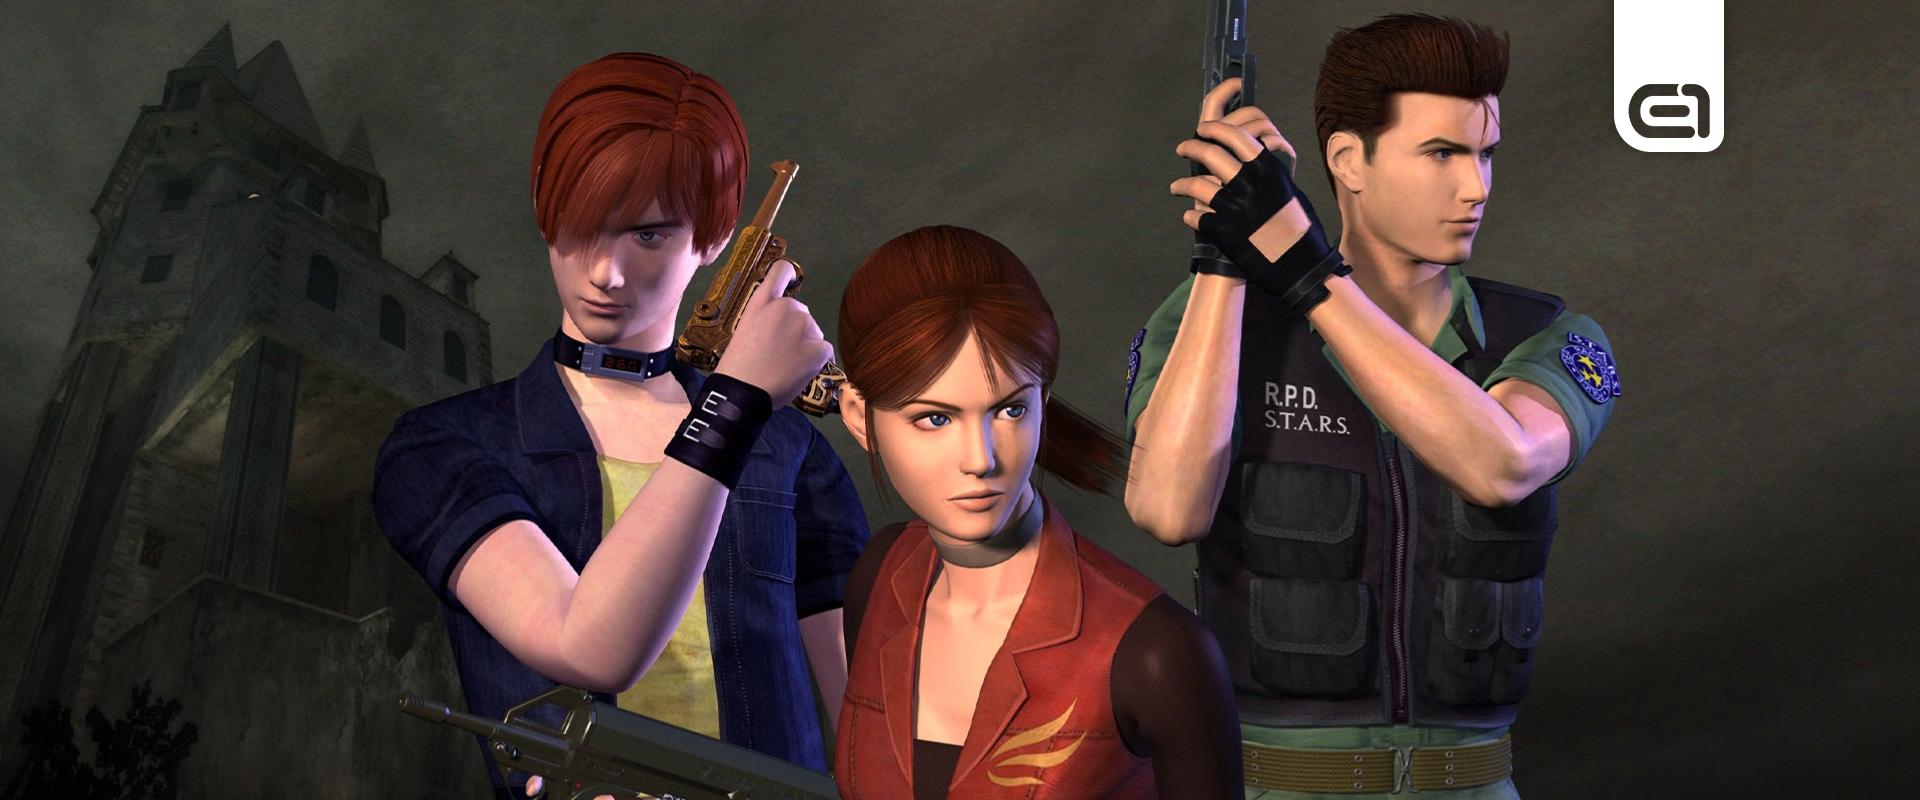 Lehet, hogy ez lesz a következő Resident Evil epizód, amit felújít a Capcom?